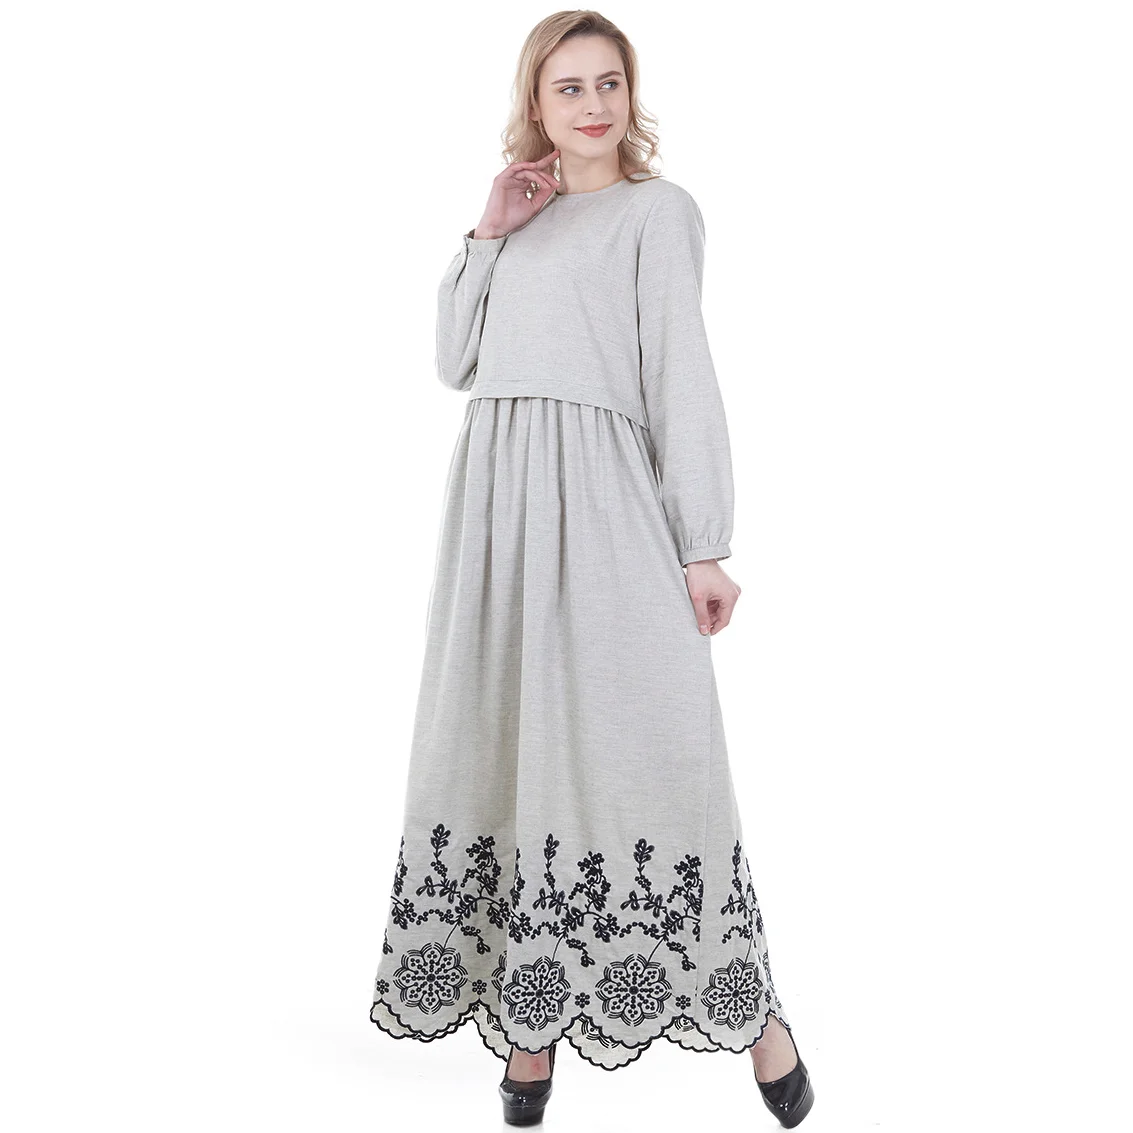 Новинка 2021, женское платье с вышивкой в мусульманском стиле, подходит ко всему для женщин на Ближнем Востоке и Юго-Восточной Азии